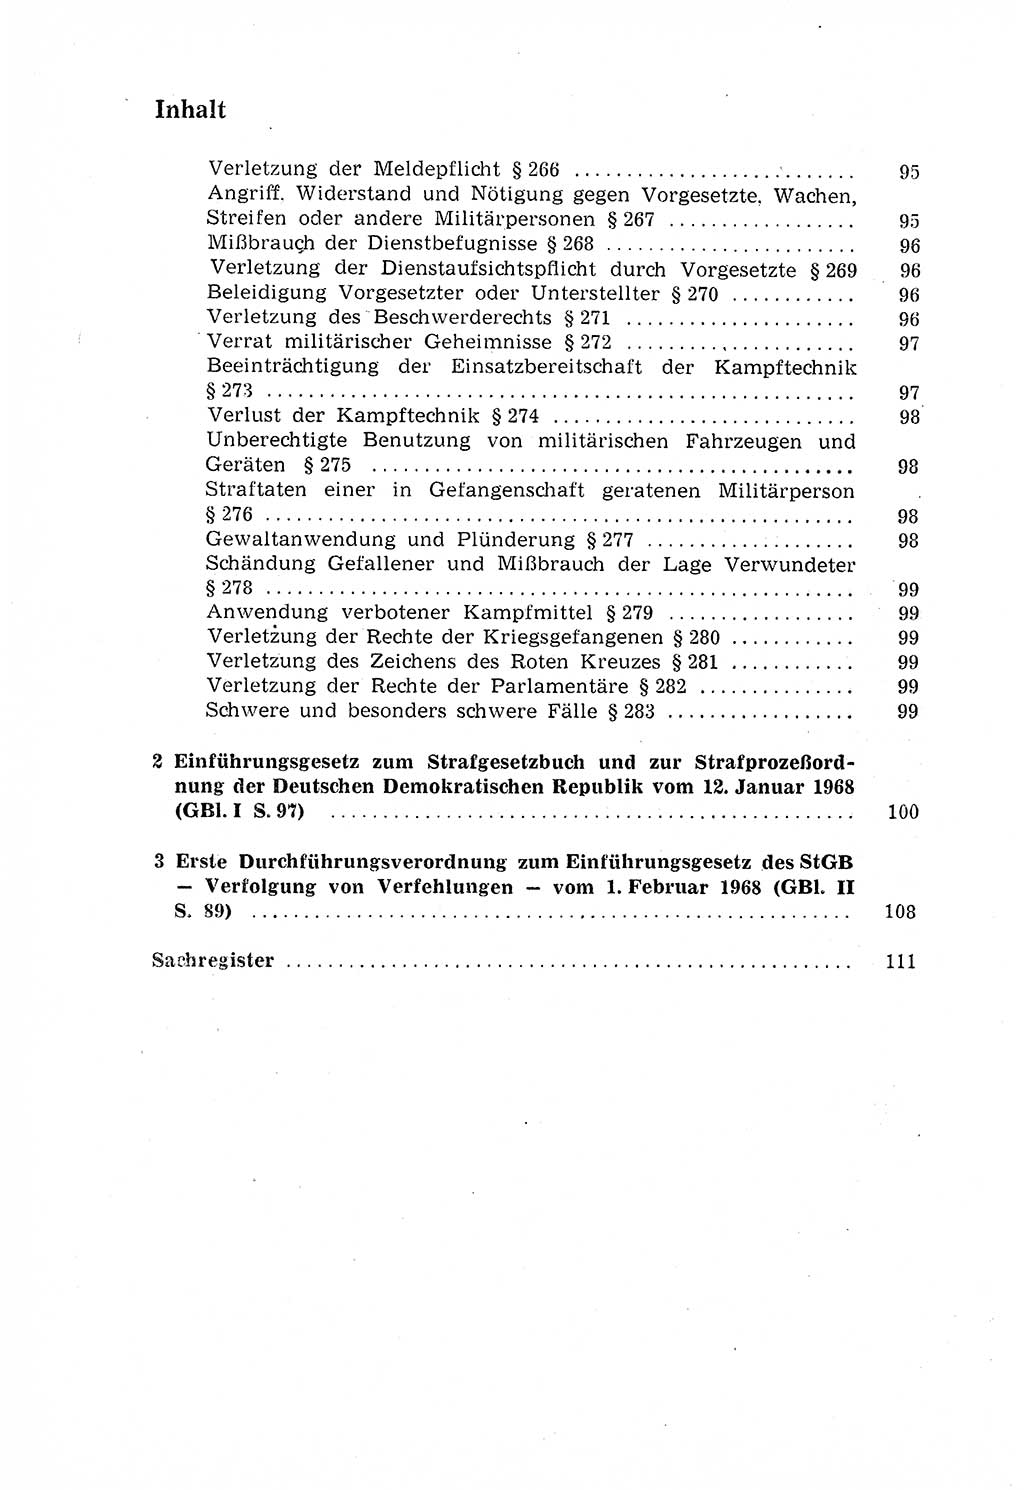 Strafgesetzbuch (StGB) der Deutschen Demokratischen Republik (DDR) 1968, Seite 14 (StGB DDR 1968, S. 14)